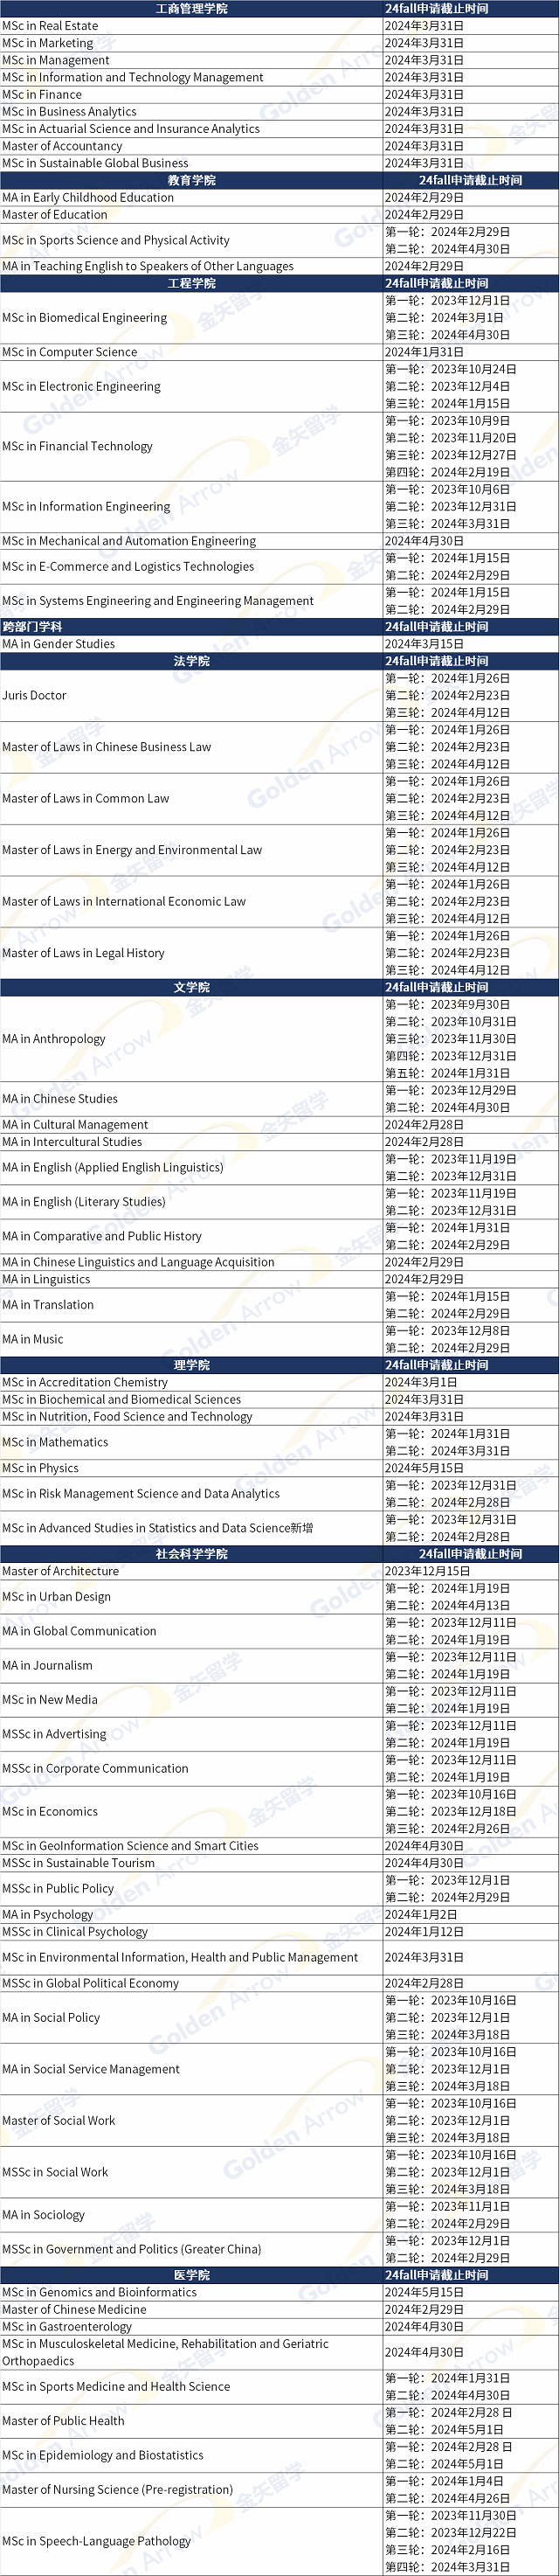 香港中文大学开放申请专业及截止日期.png